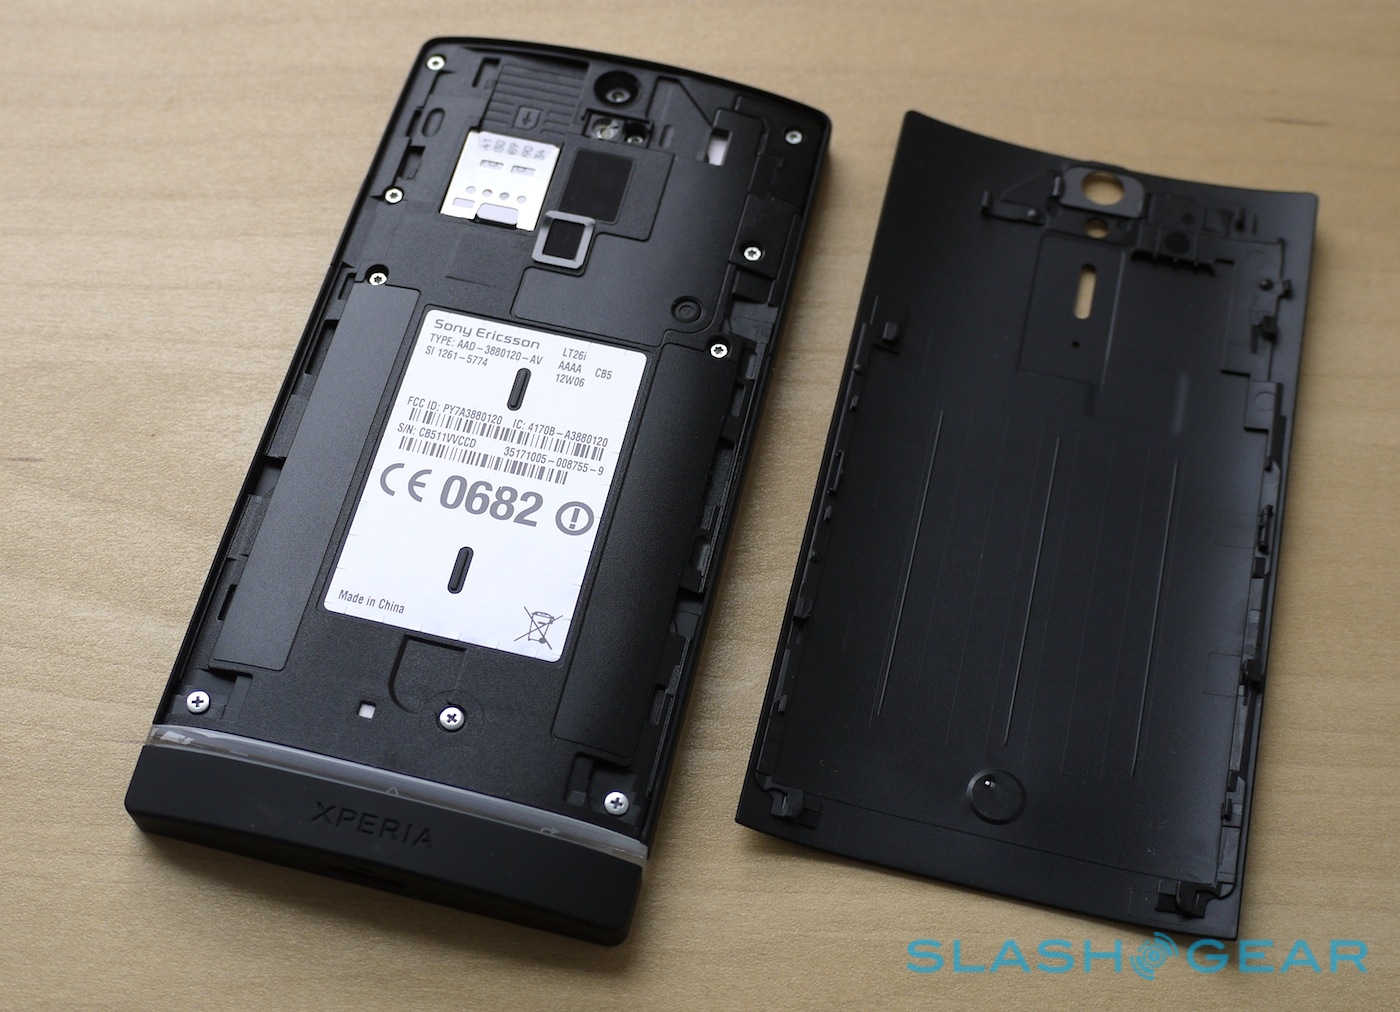 Sony xperia замена аккумулятора. Несъемная батарея. Sony Experia с несъёмной батареей. Антенный блок для Sony Xperia s lt26i. Сони иксперия ф3111 в разборе.